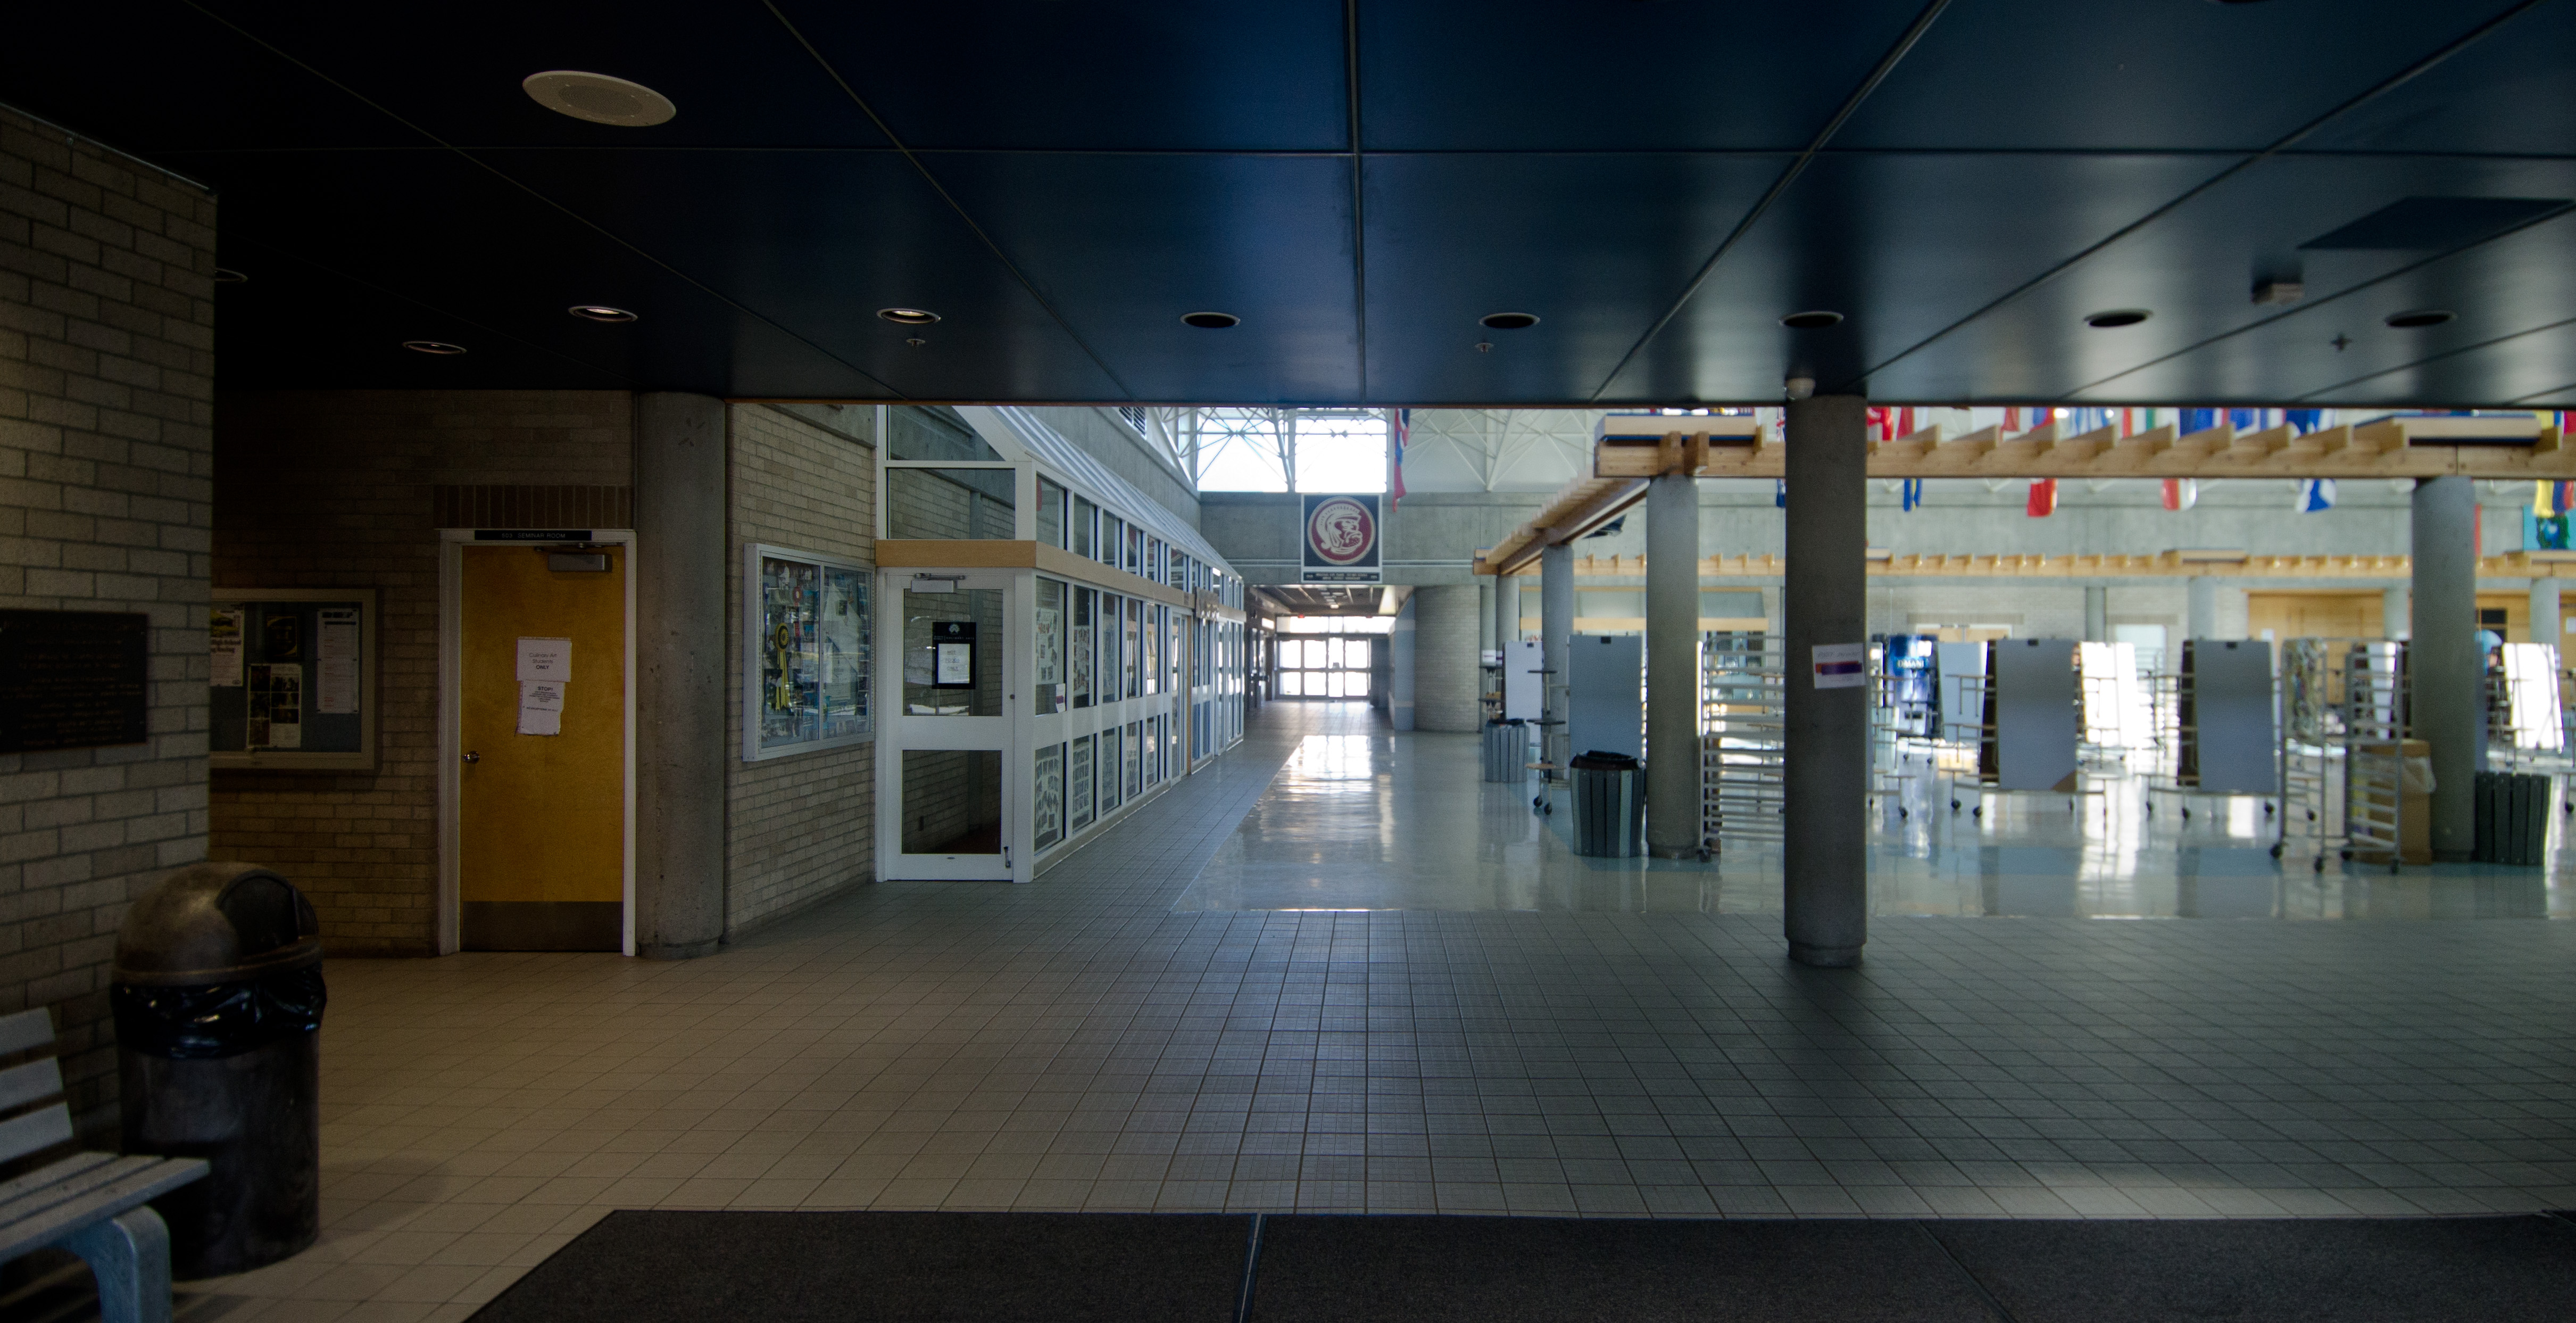 North Surrey Secondary School - Surrey, British Columbia4842 x 2486